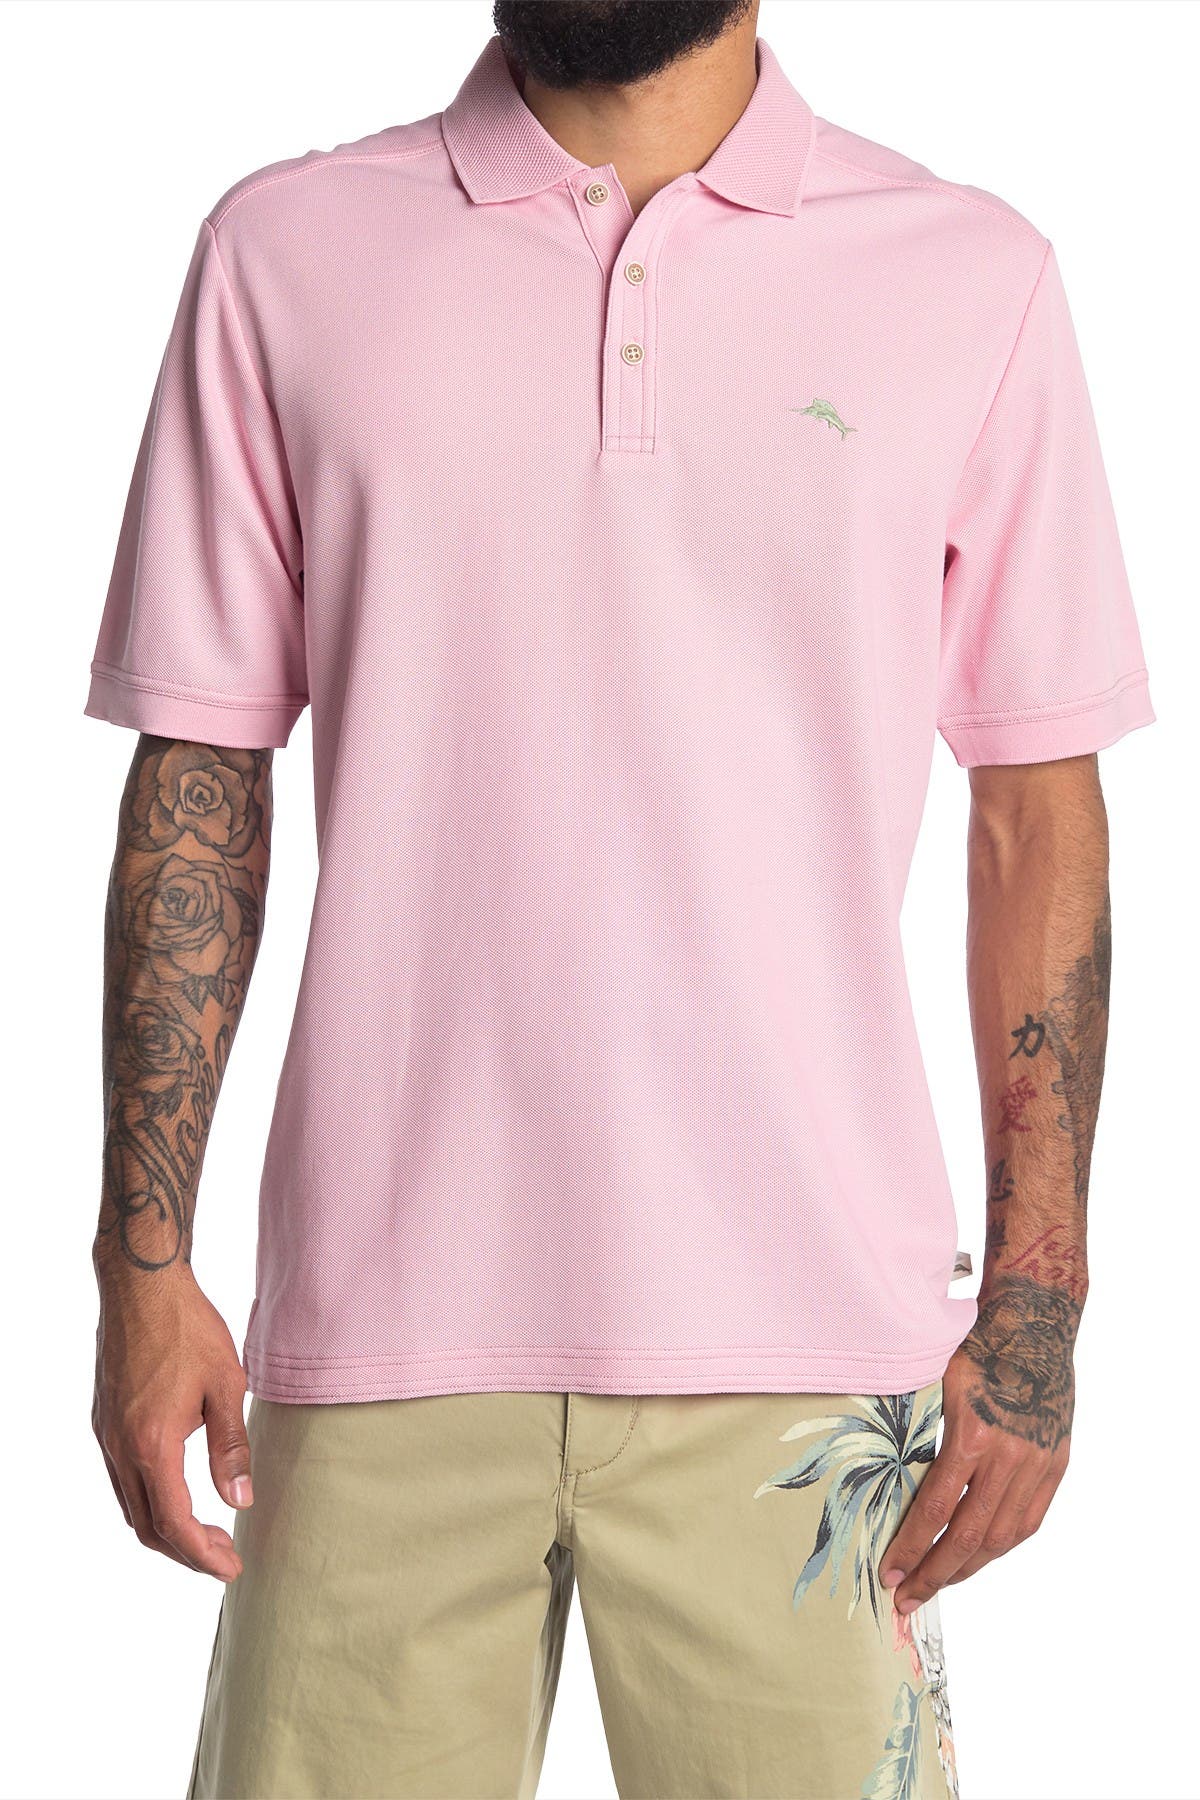 tommy bahama pink shirt